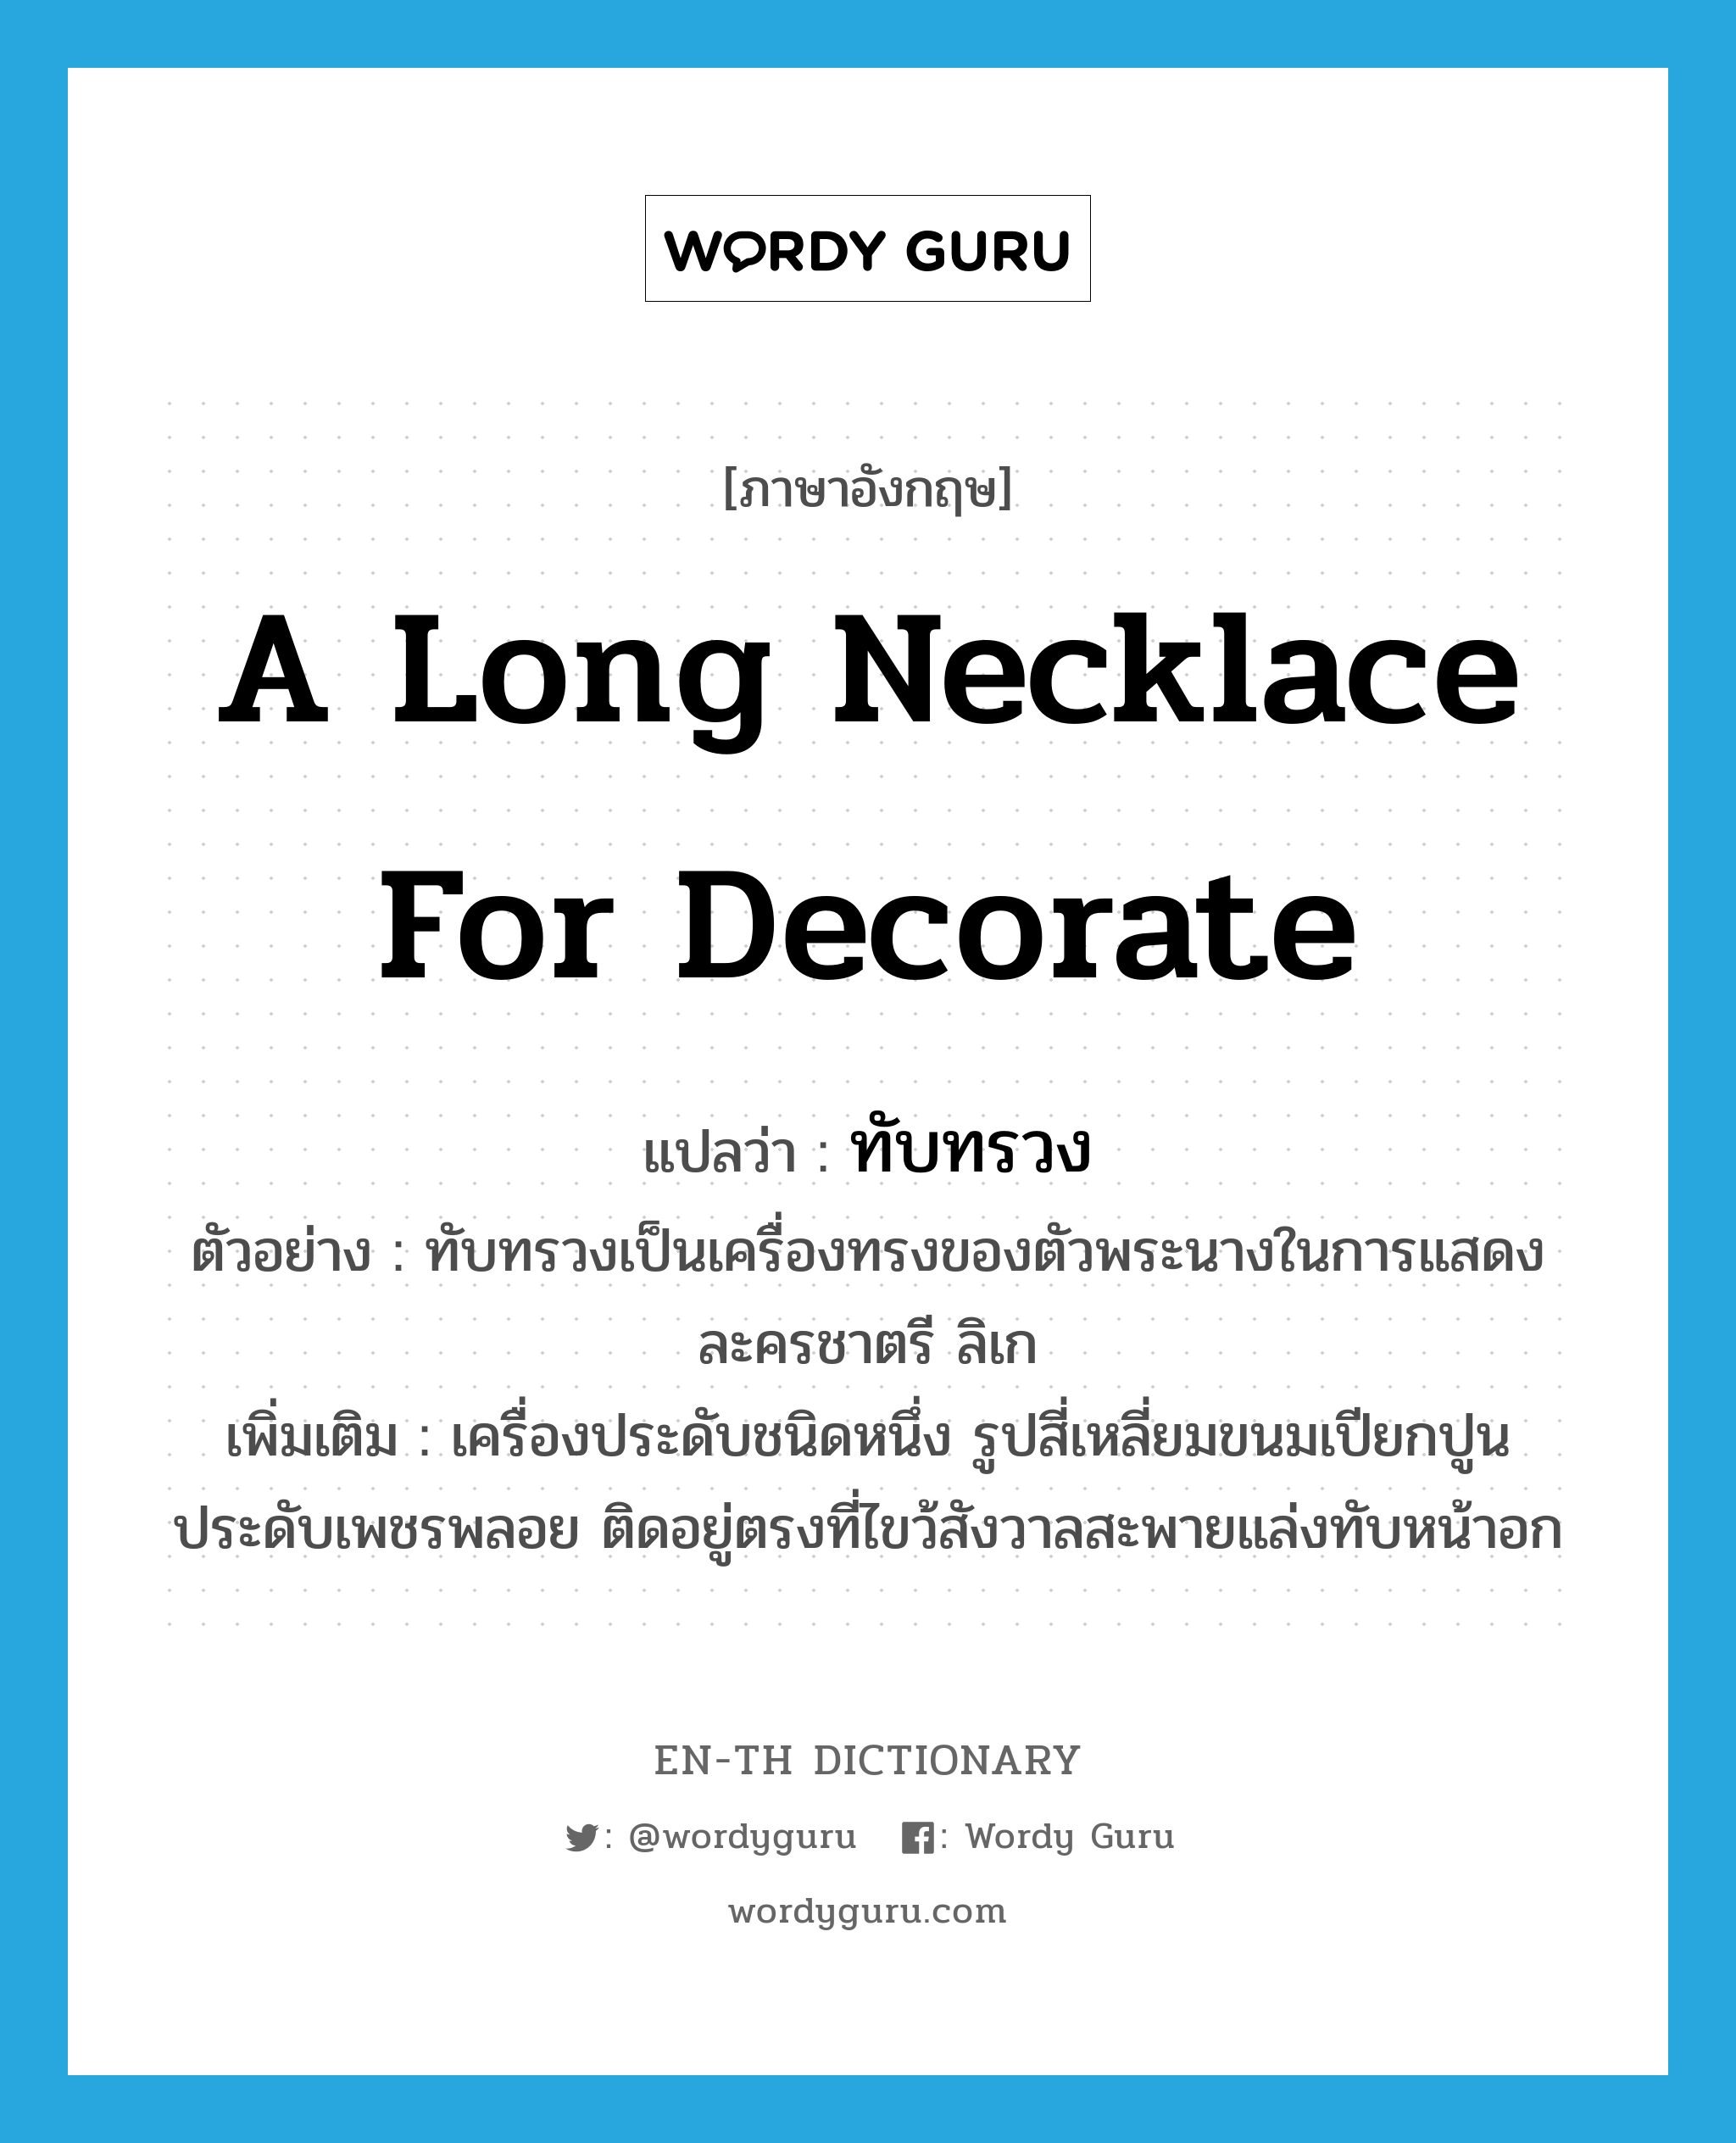 a long necklace for decorate แปลว่า? คำศัพท์ในกลุ่มประเภท N, คำศัพท์ภาษาอังกฤษ a long necklace for decorate แปลว่า ทับทรวง ประเภท N ตัวอย่าง ทับทรวงเป็นเครื่องทรงของตัวพระนางในการแสดงละครชาตรี ลิเก เพิ่มเติม เครื่องประดับชนิดหนึ่ง รูปสี่เหลี่ยมขนมเปียกปูน ประดับเพชรพลอย ติดอยู่ตรงที่ไขว้สังวาลสะพายแล่งทับหน้าอก หมวด N